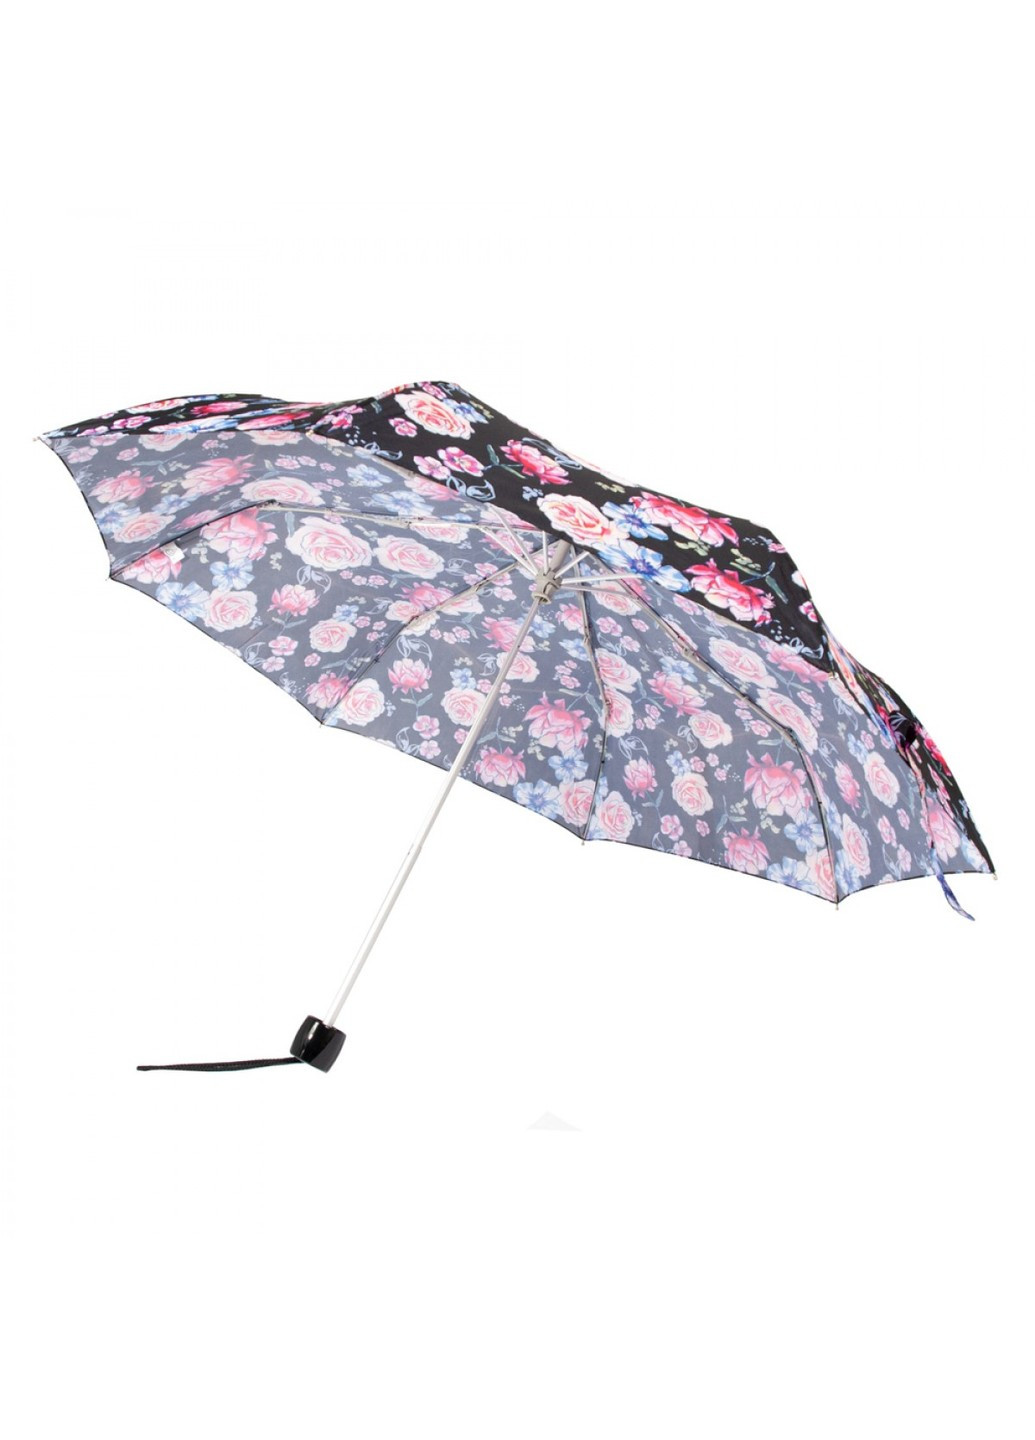 Механический женский зонт Minilite-2 L354 Sketched Bouquet (Цветочный эскиз) Fulton (262449503)